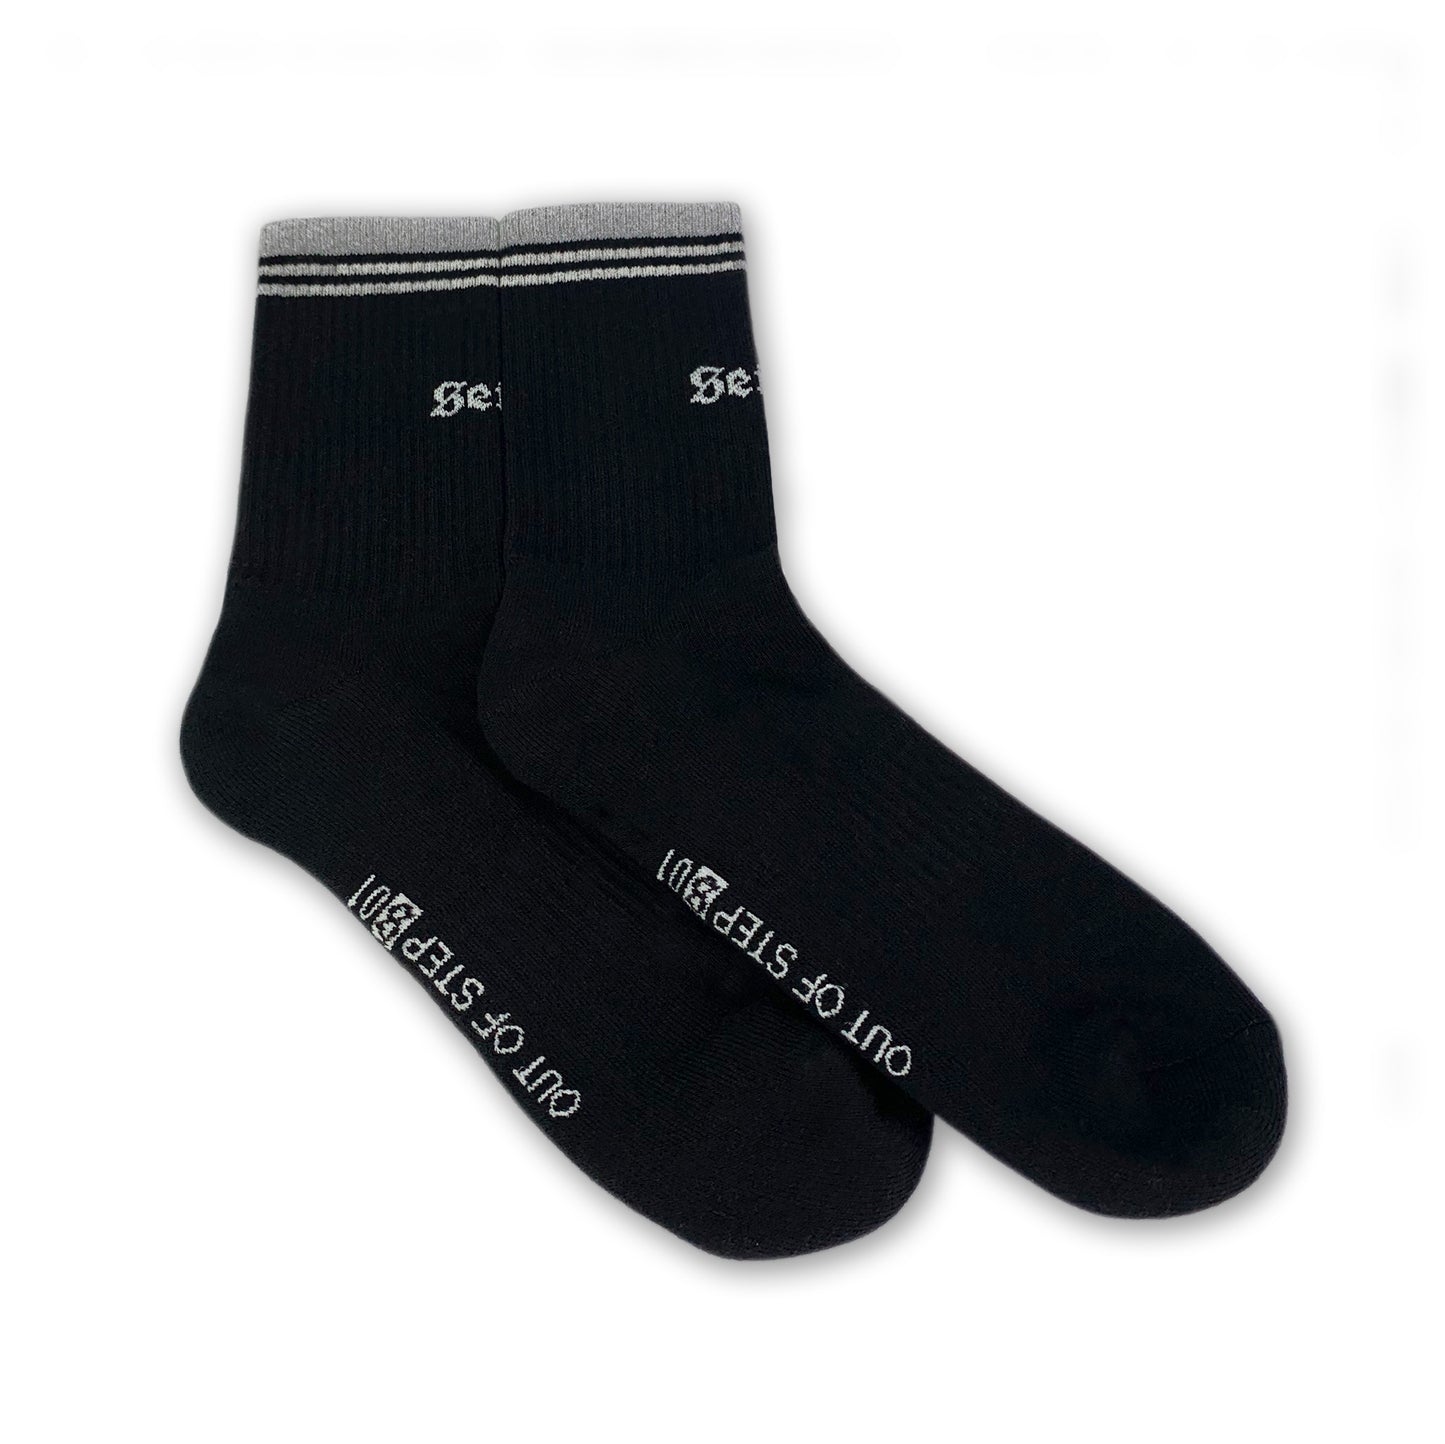 Essential Crew Sock Pair (Black)